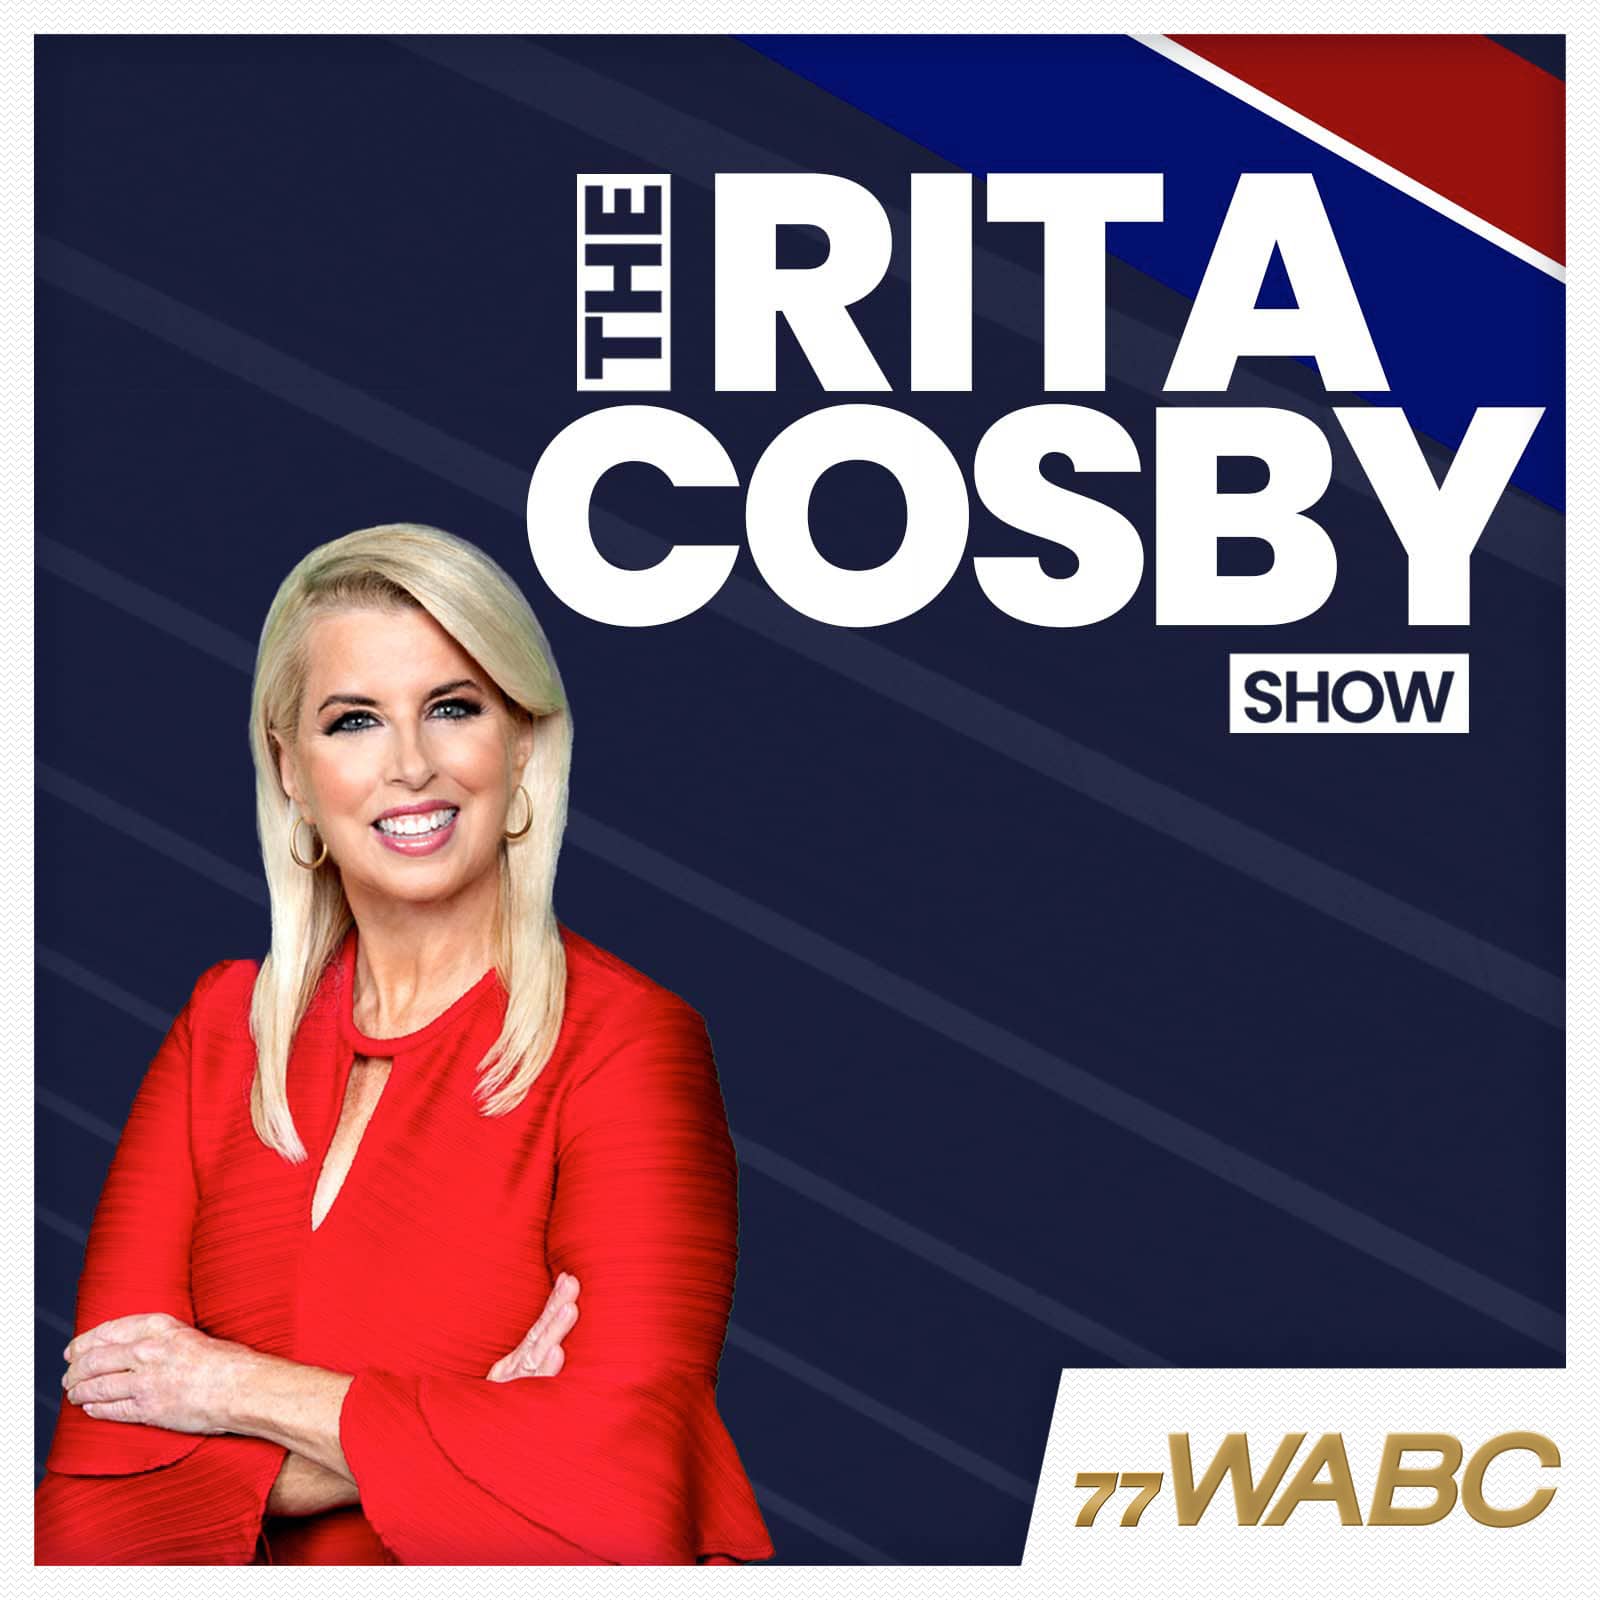 rita-cosby-podcast-new-logo313236